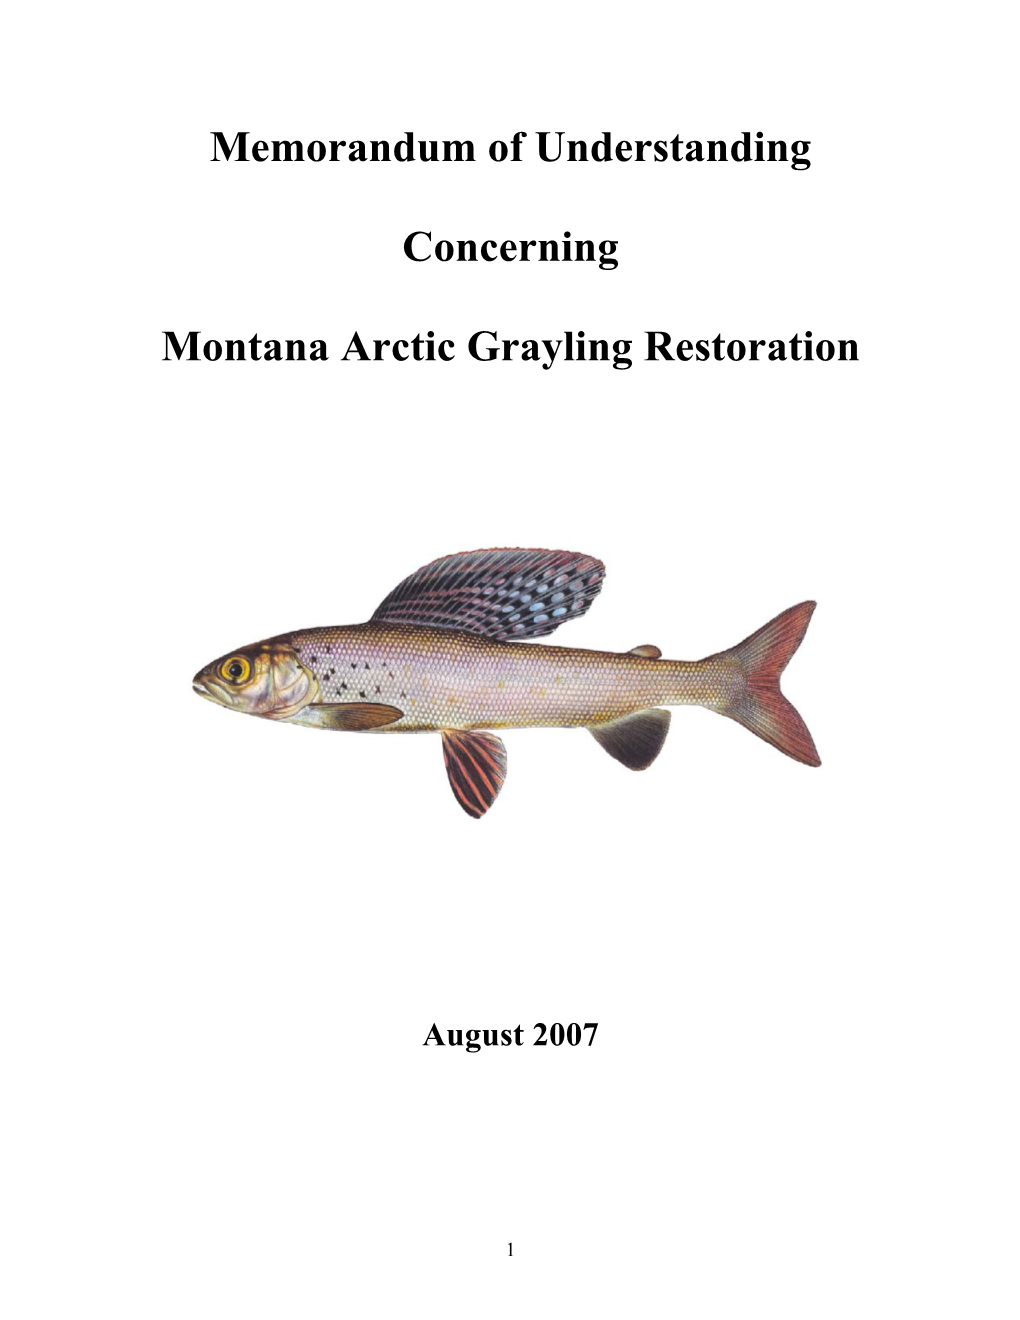 Memorandum of Understanding Concerning Montana Arctic